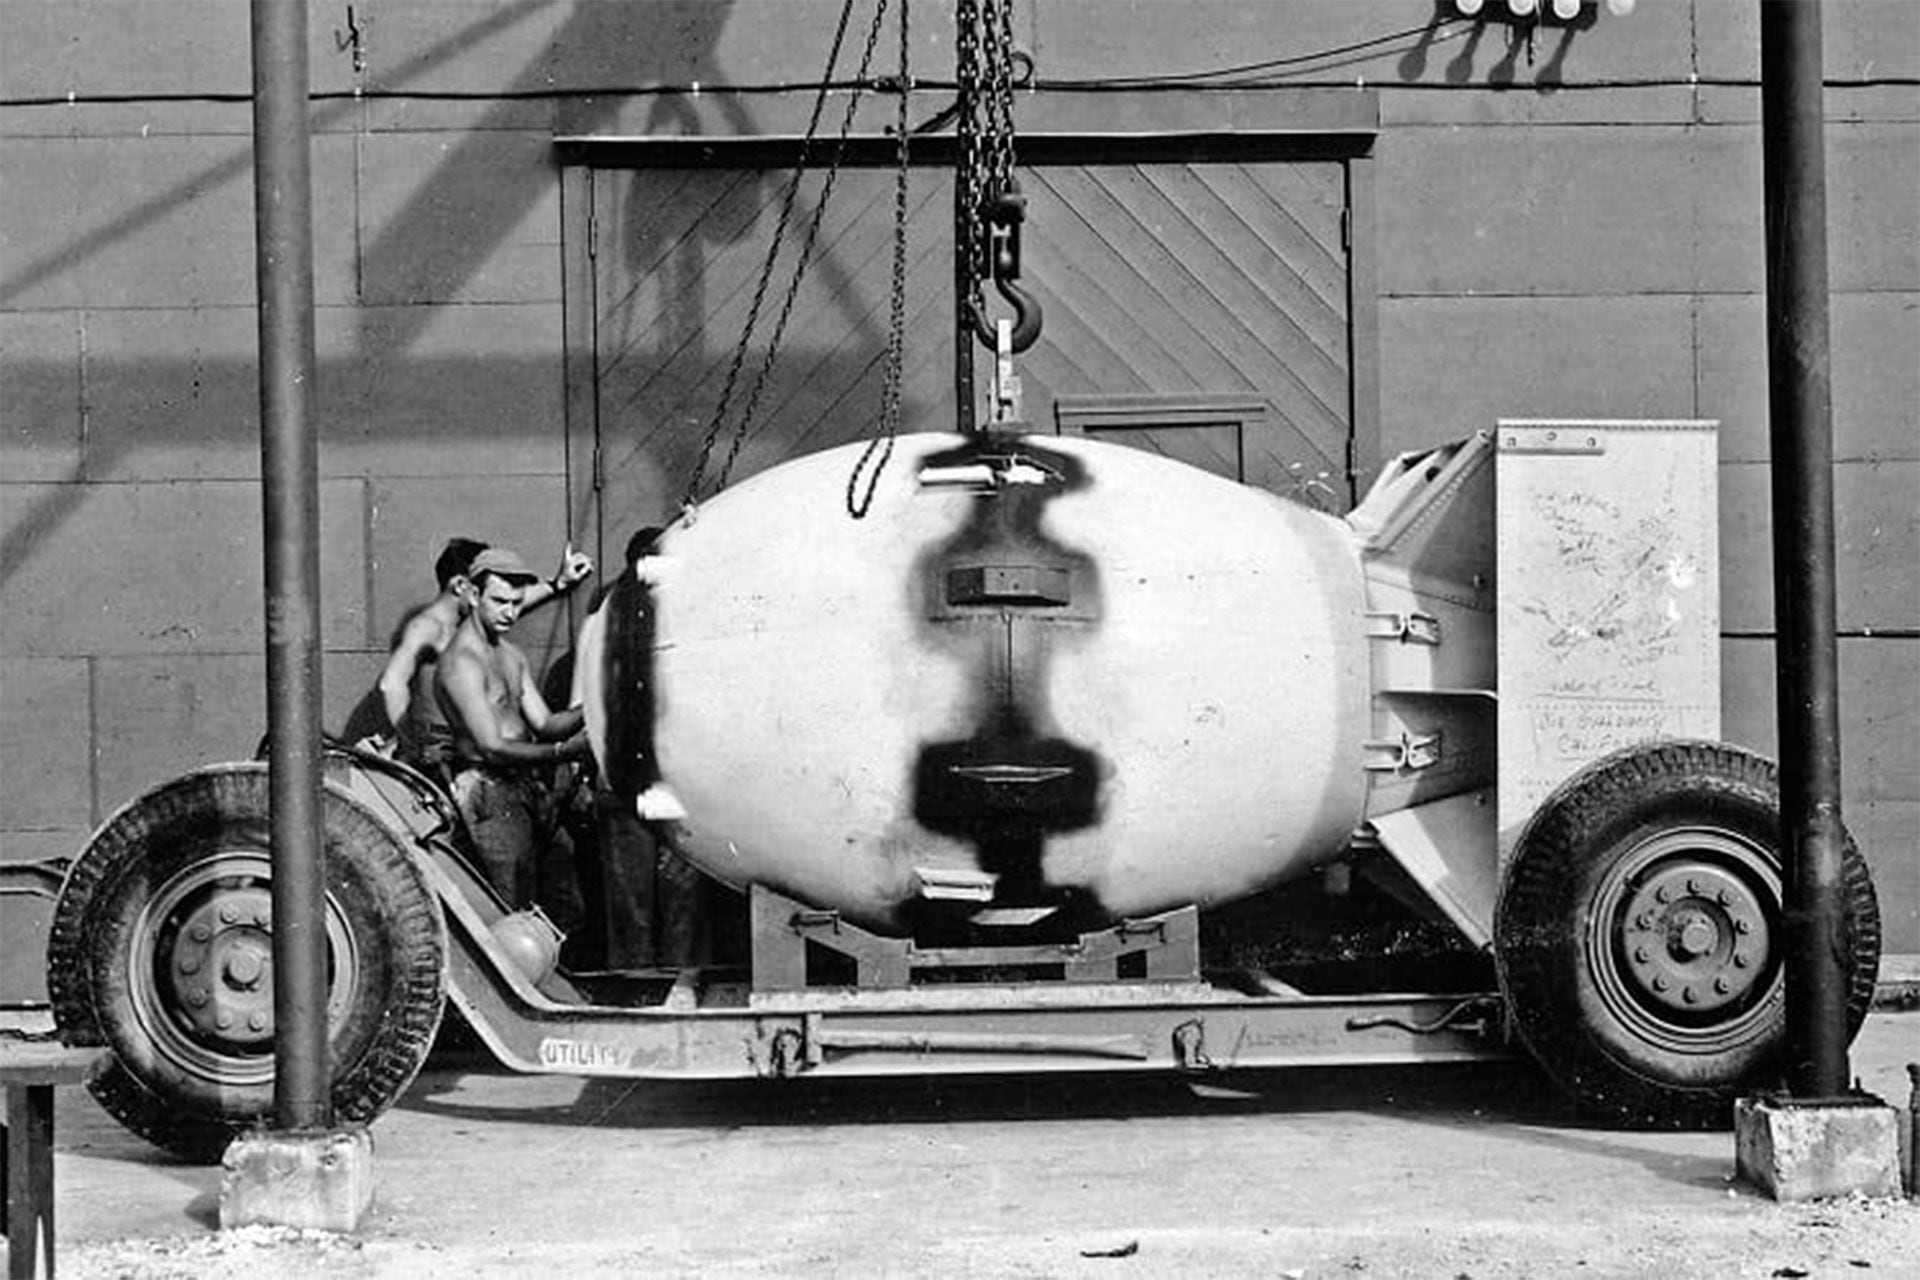 Bomba atómica "Fat Man", producida como parte del Proyecto Manhattan (US War Department)